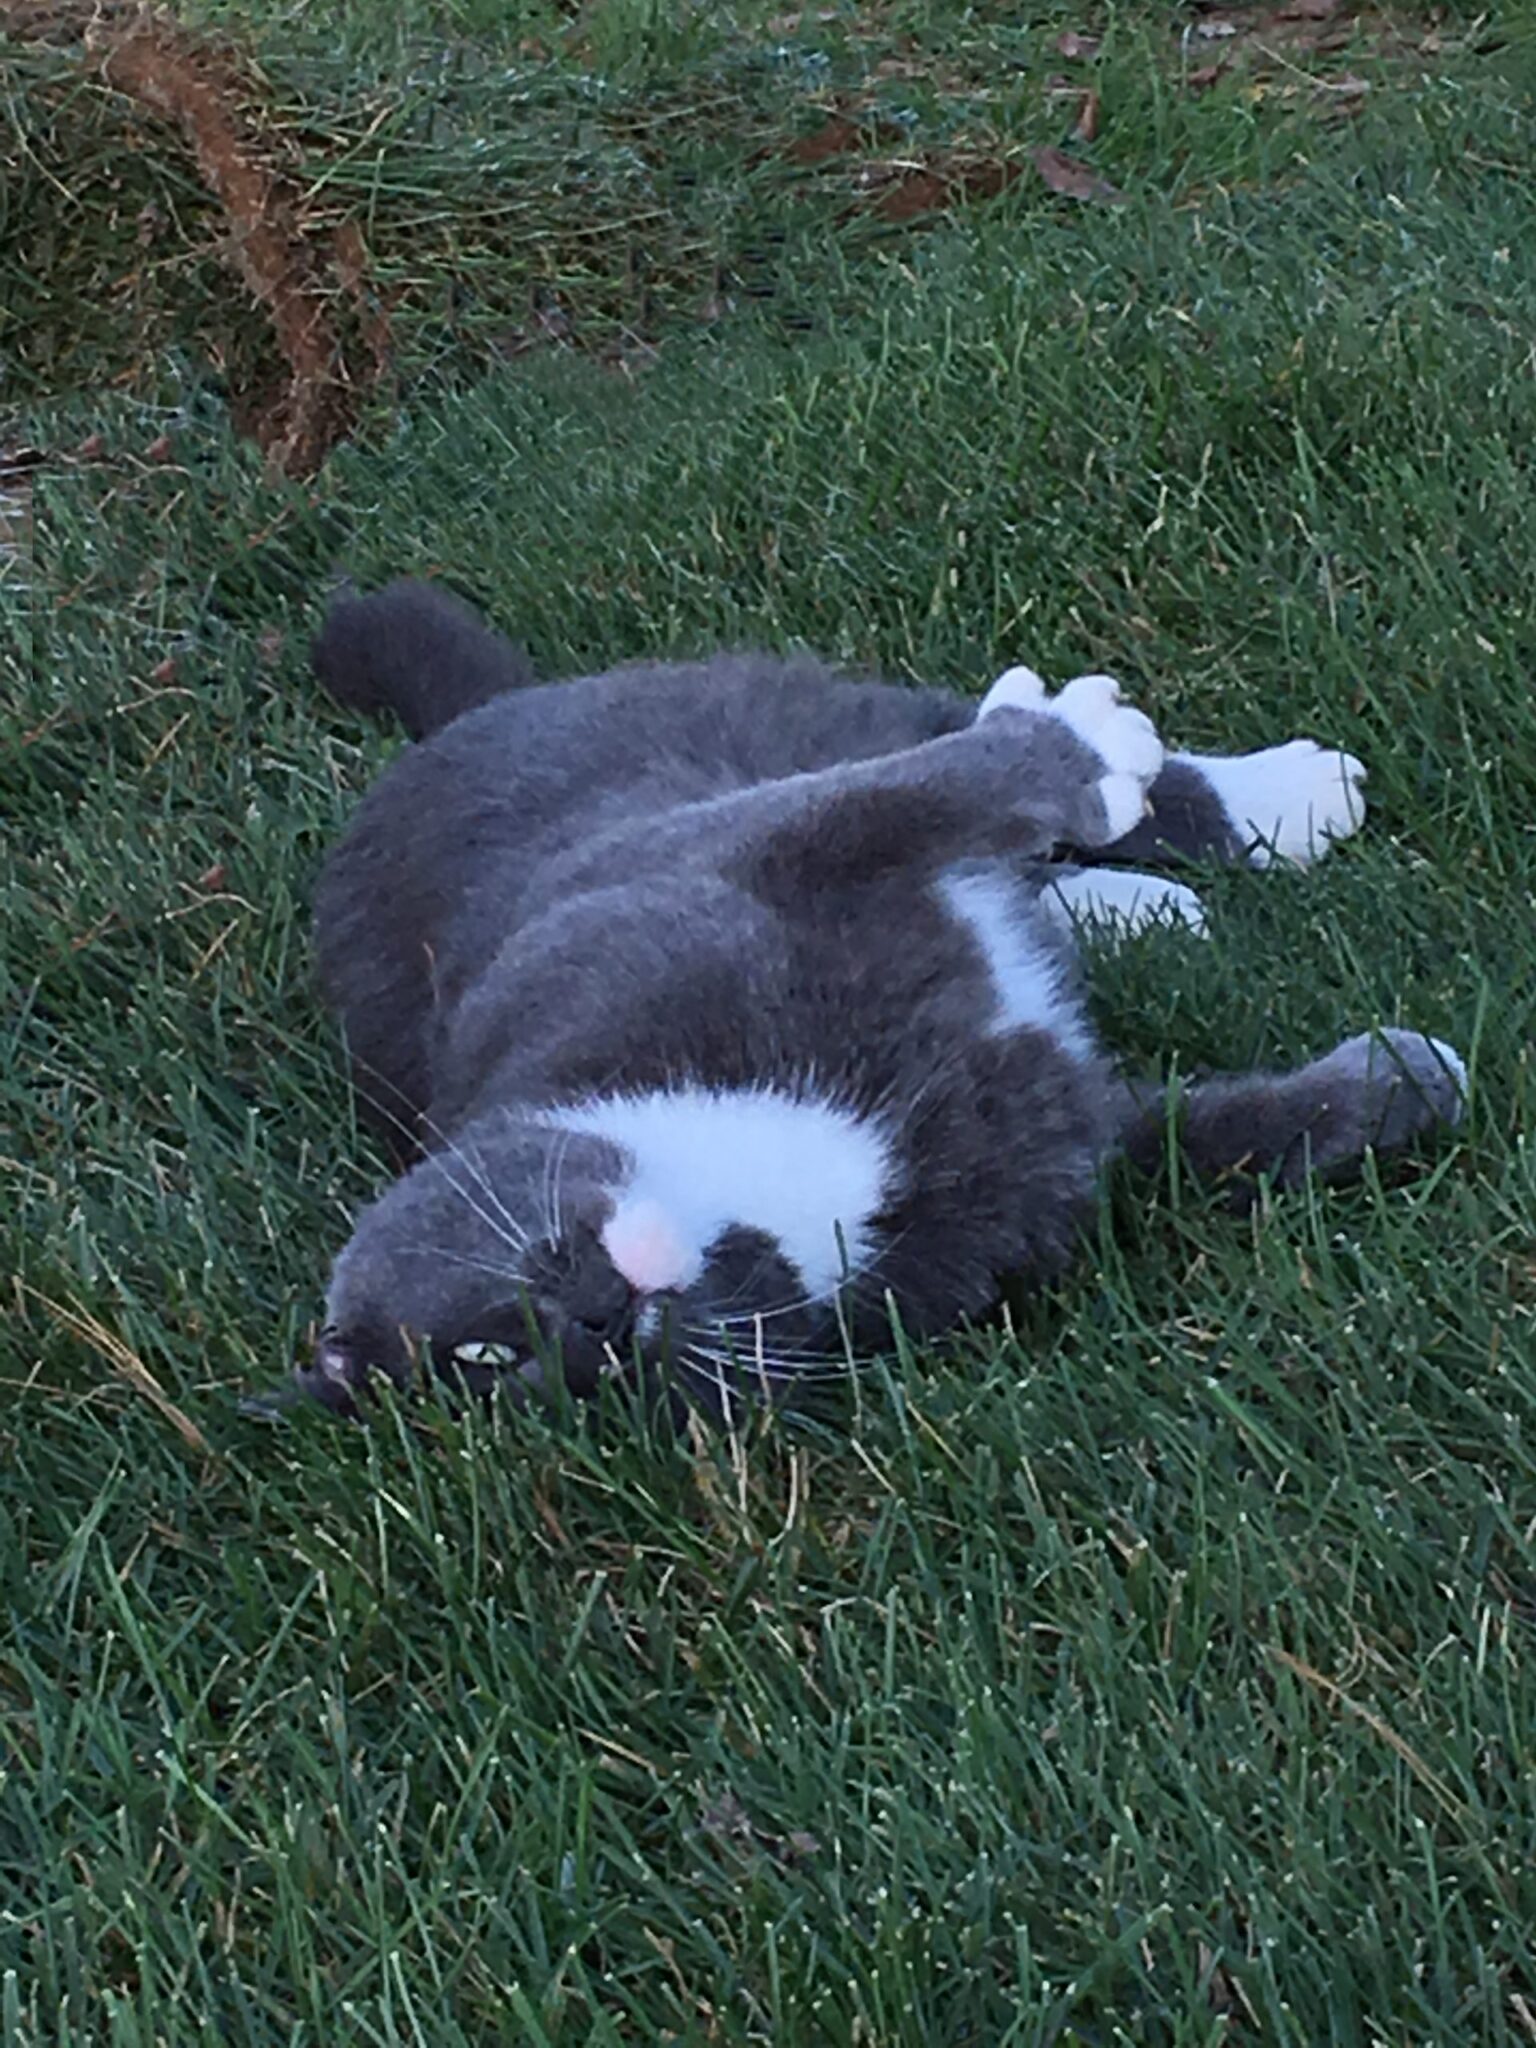 Cat enjoying healthy lawn